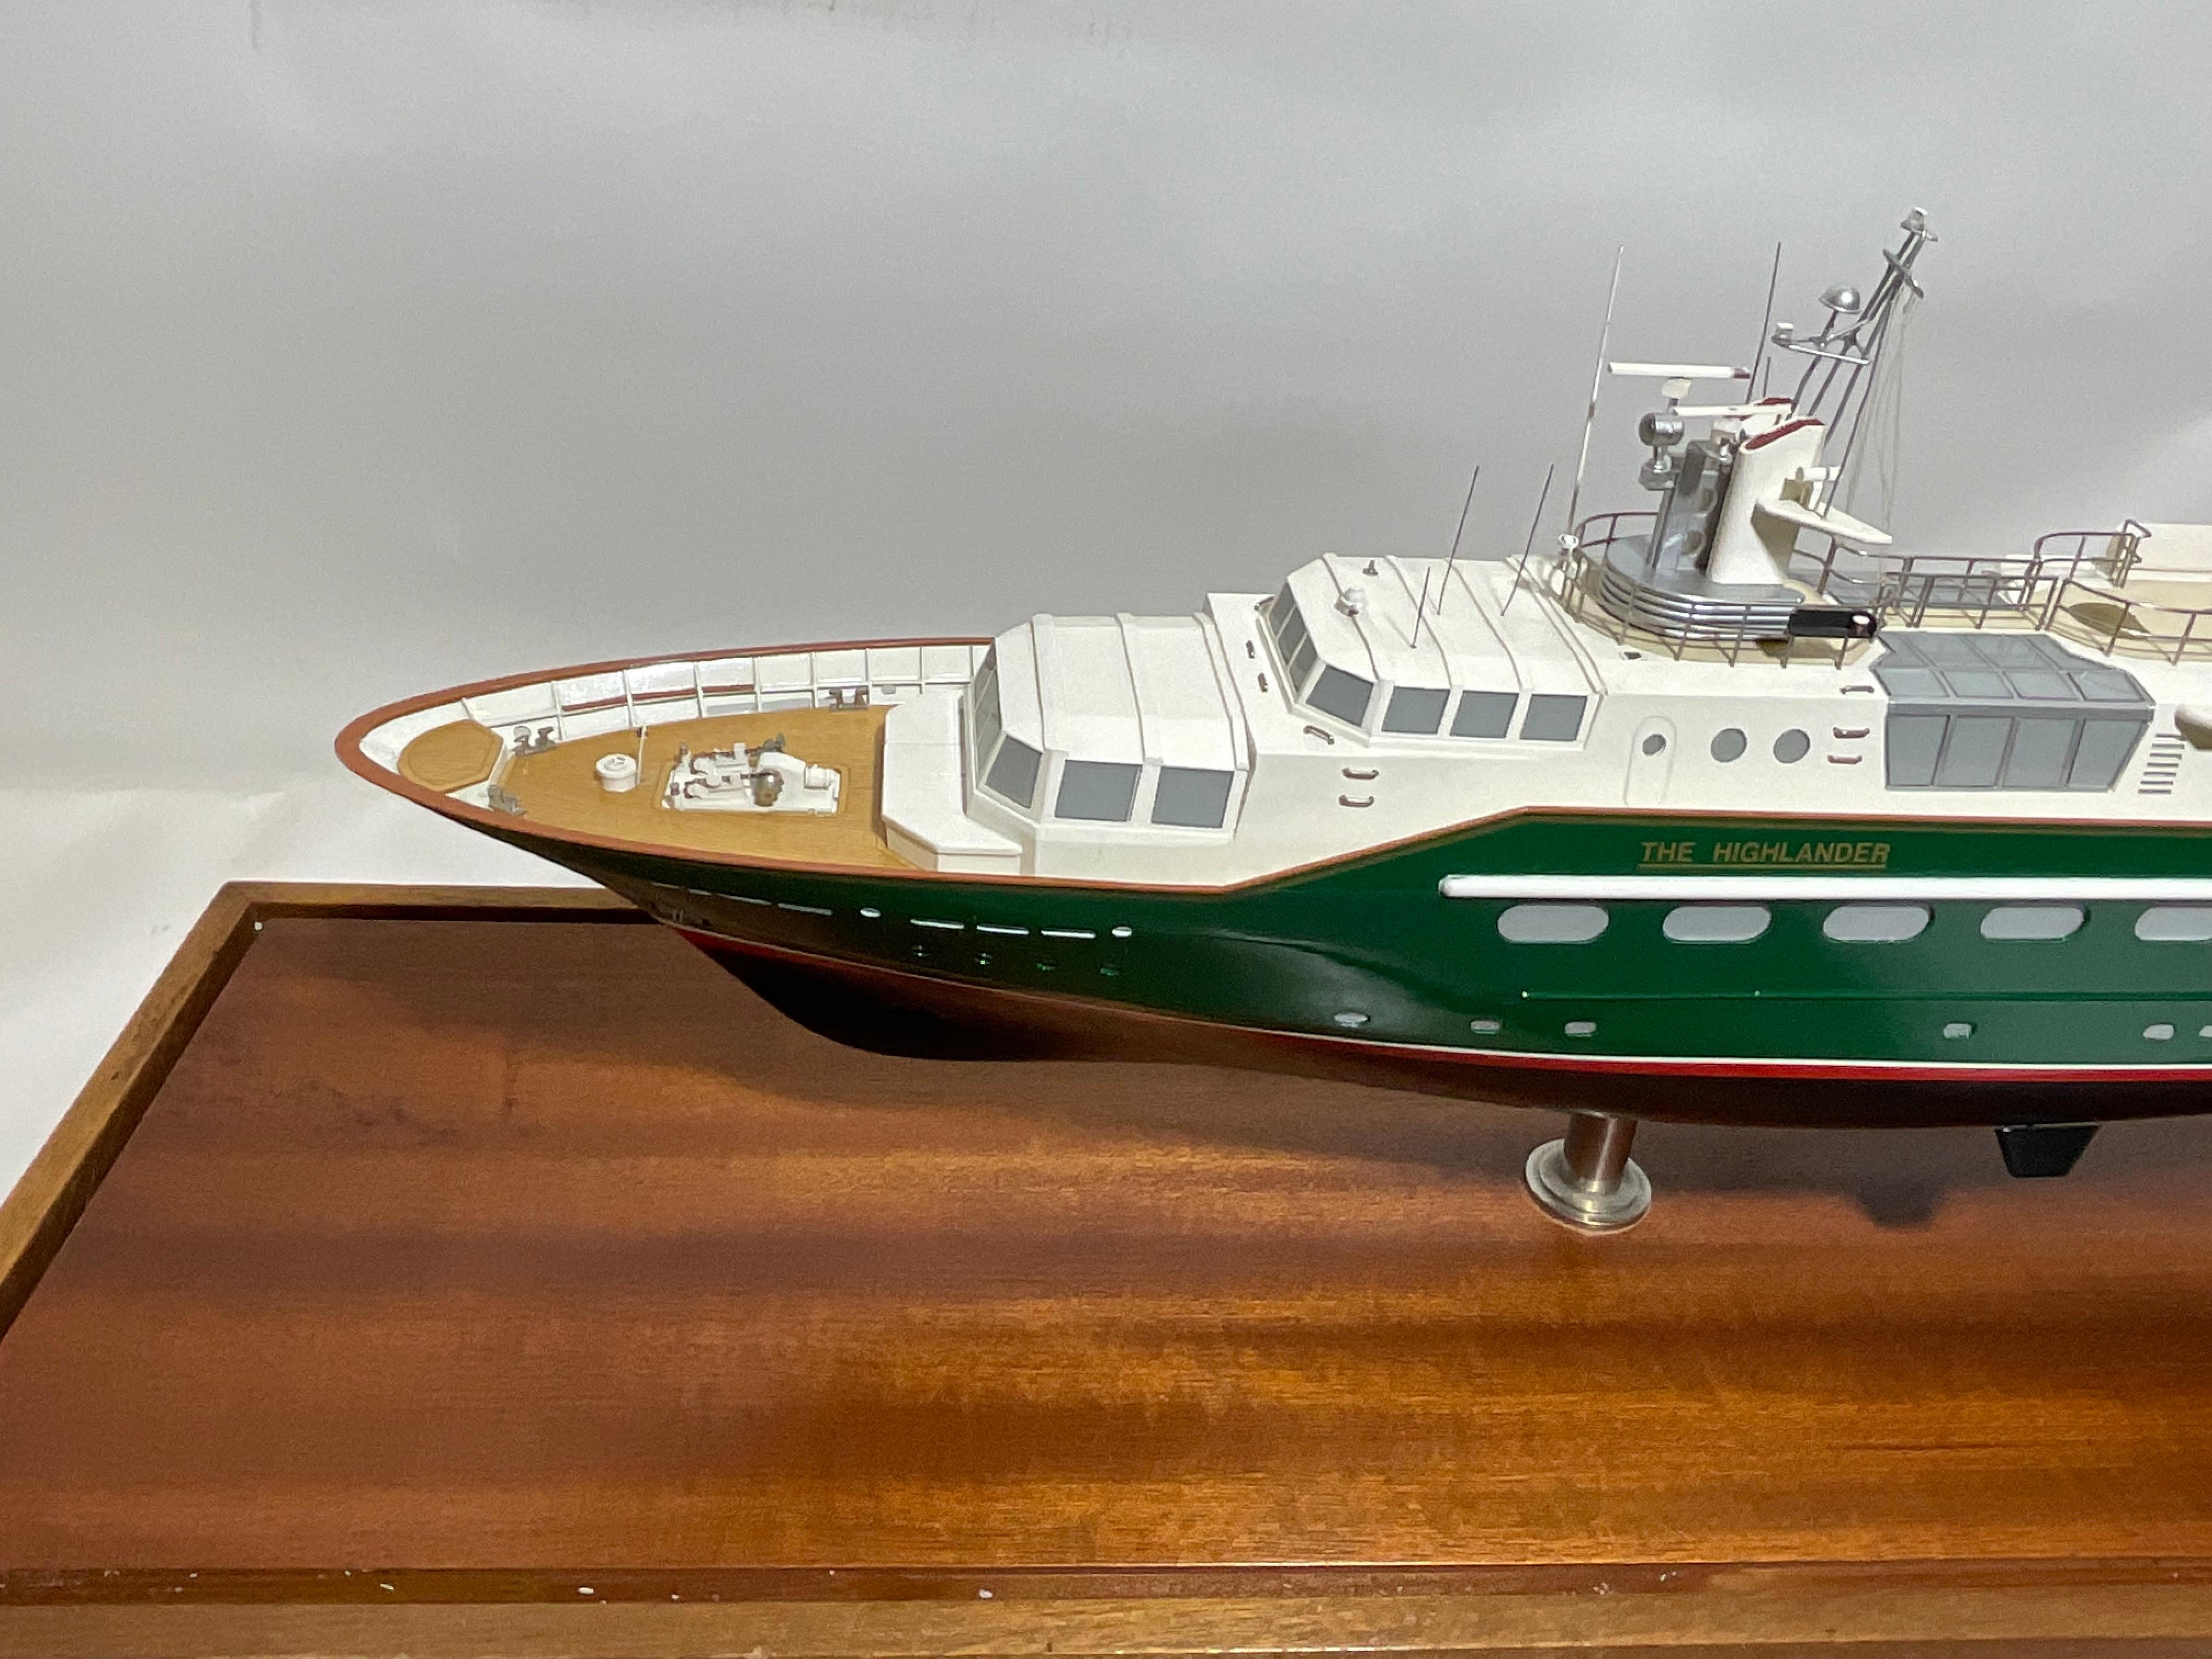 Modèle du yacht « The Highlander » de Malcolm Forbes en vente 13